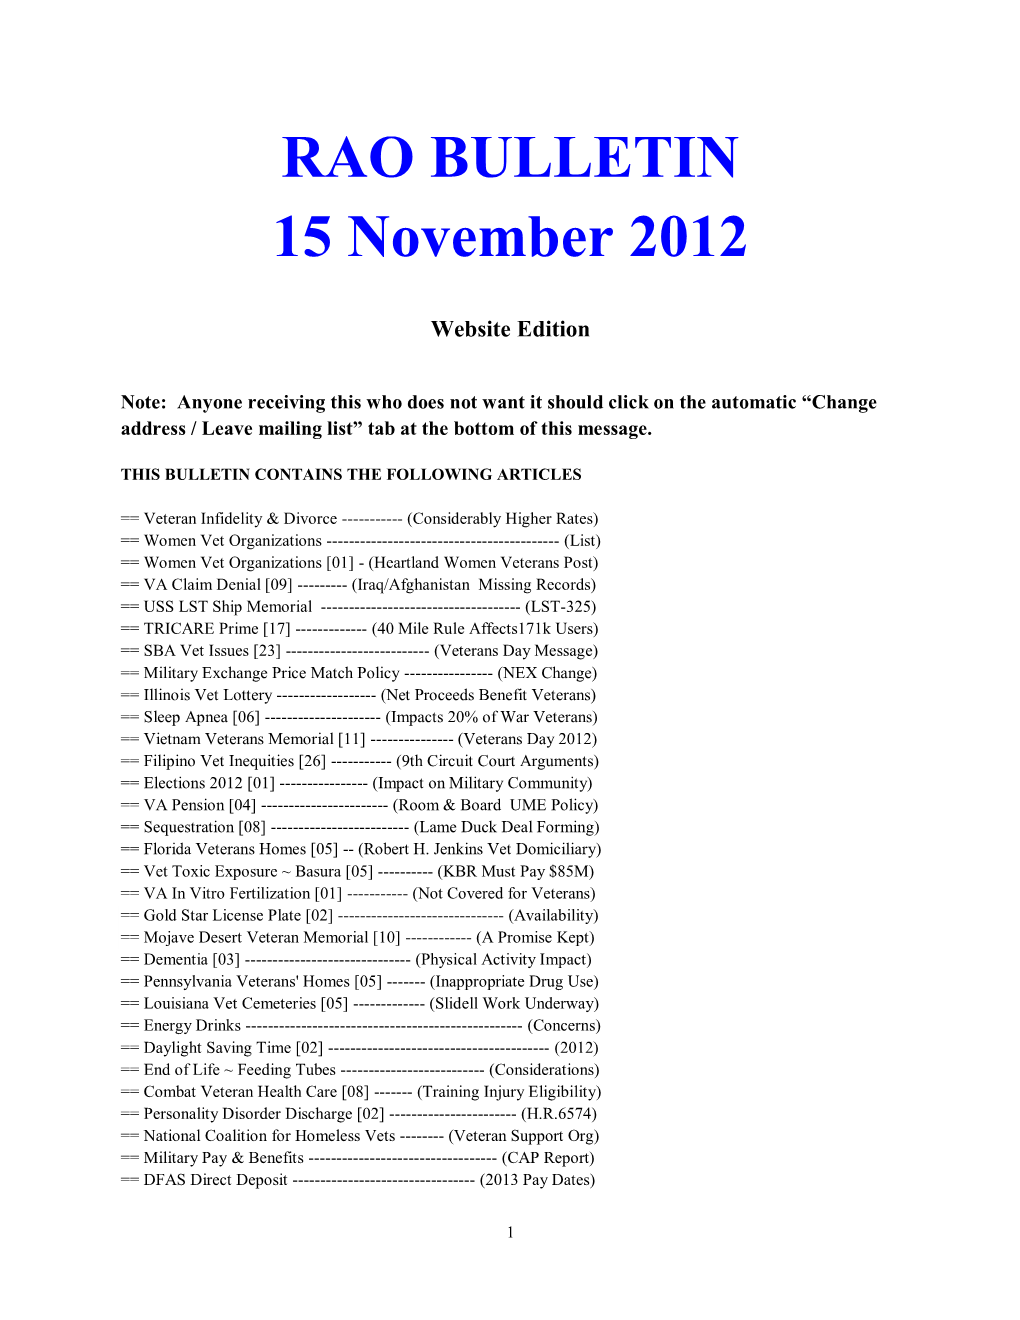 RAO BULLETIN 15 November 2012